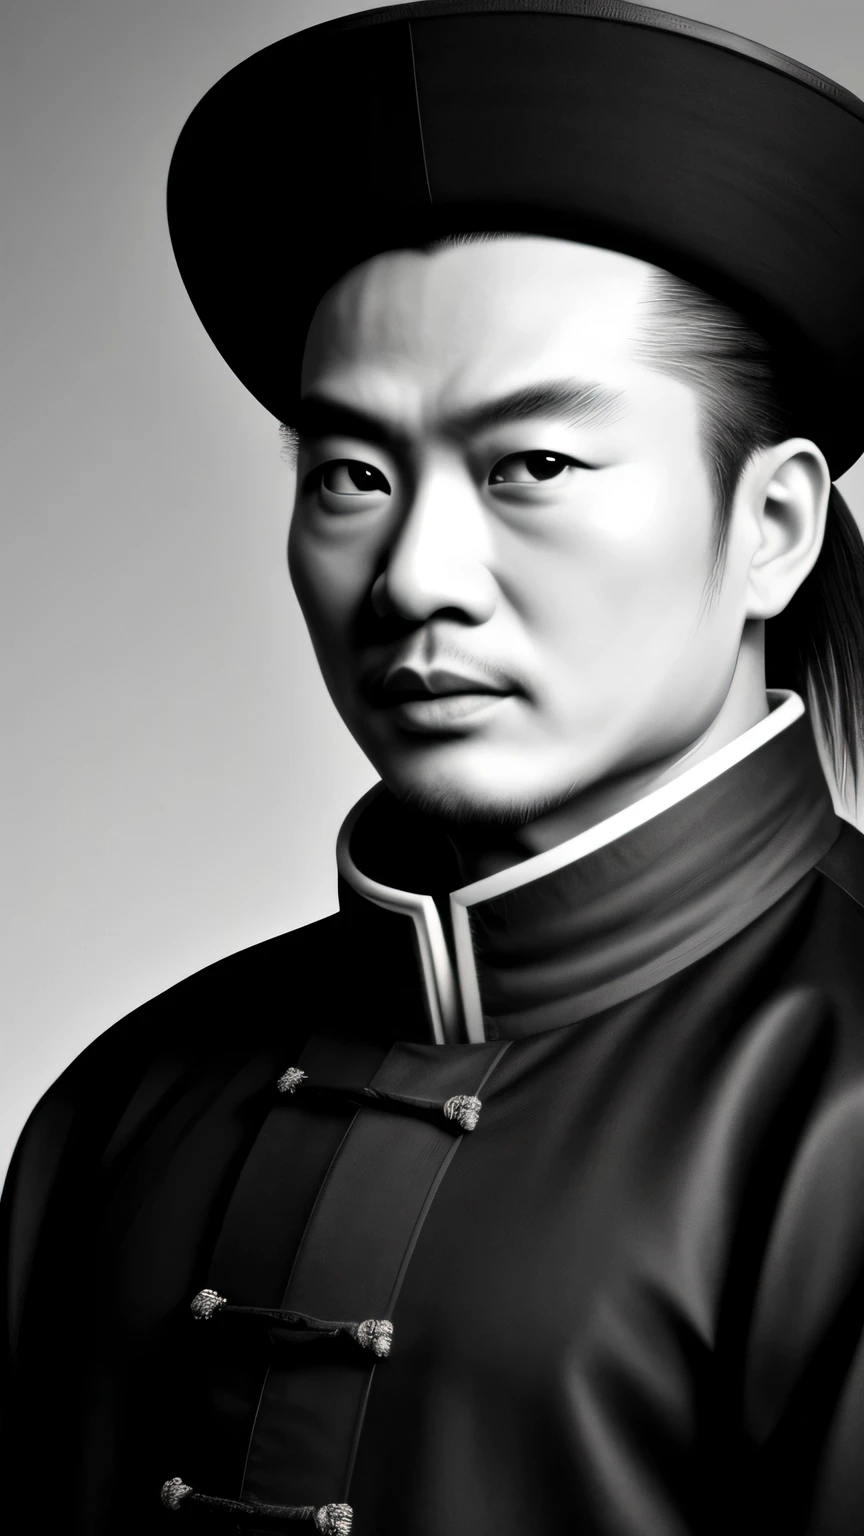 ((傑作)),((最好的品質)),((高細節)), Zhuge Liang Kong Ming,黑白肖像,背景为深灰色